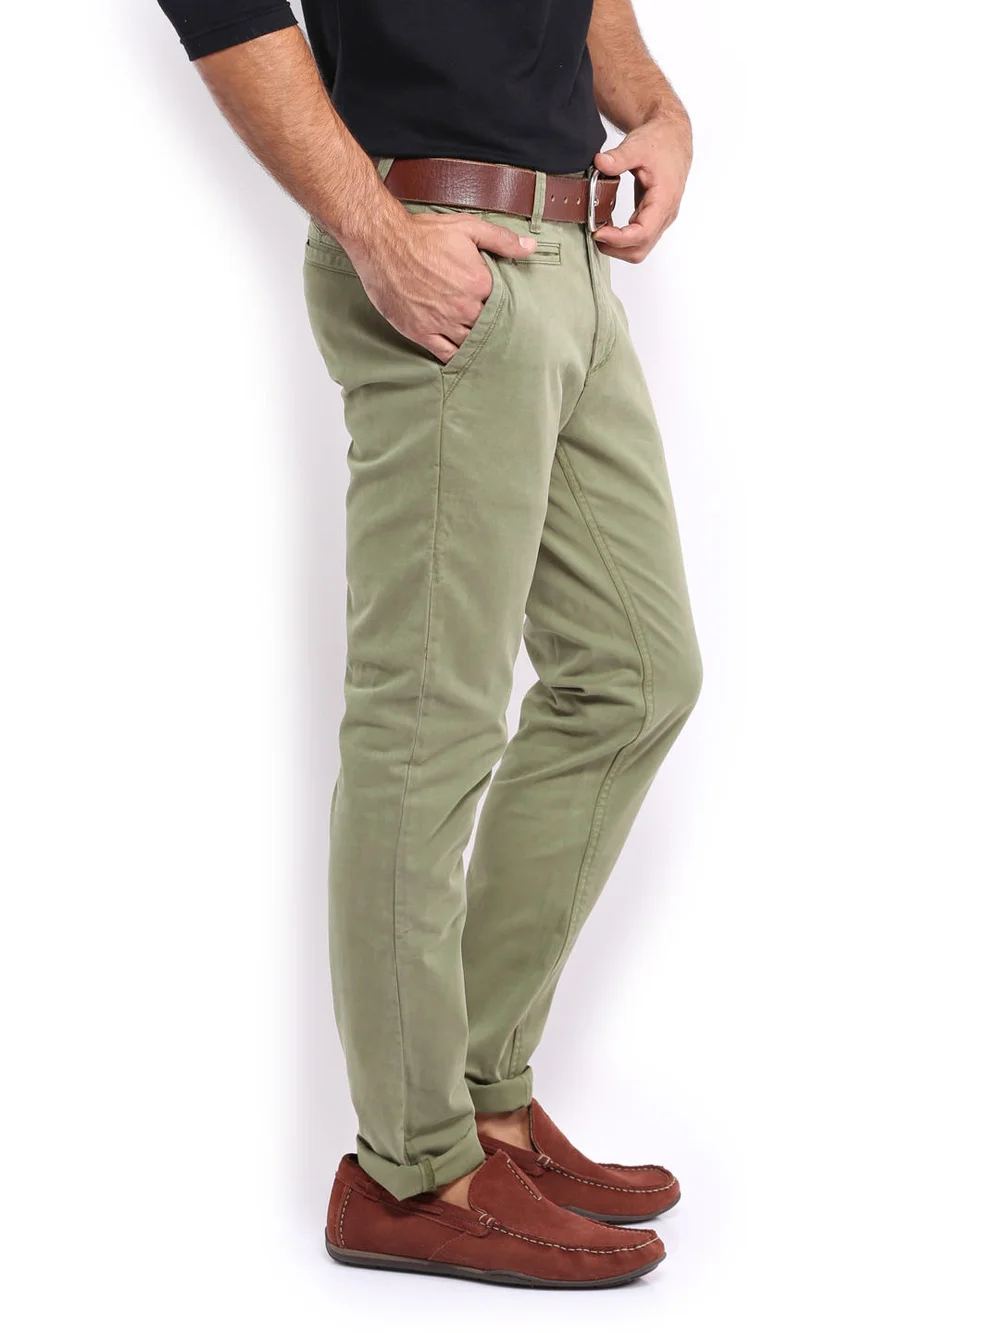 Olive Green Chino Man Pants - Buy Man Pants,Olive Green Pants,Chino